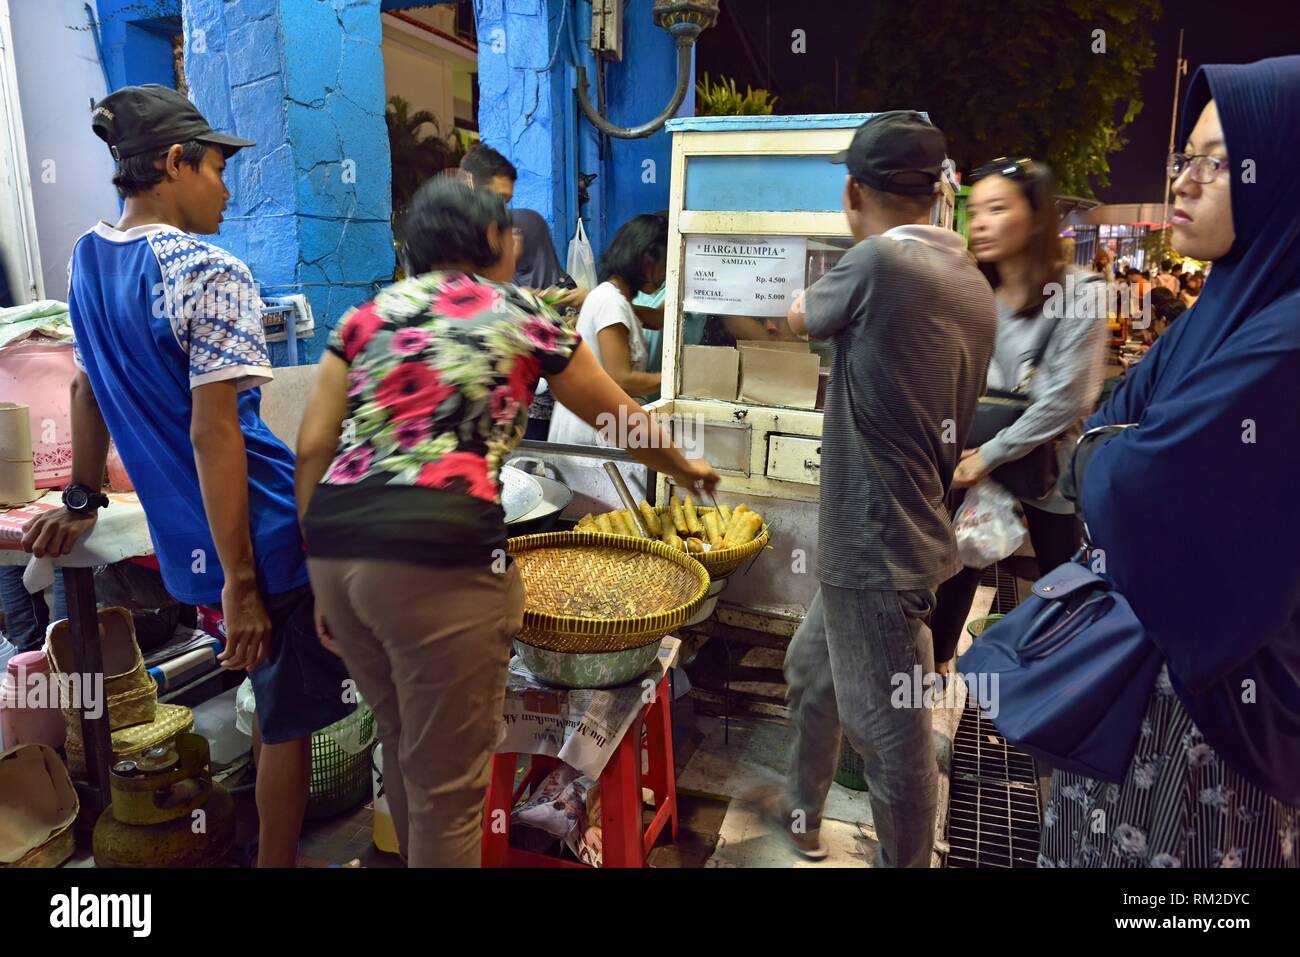 Piccola bancarella vendendo una specialità ''Lumpia Samijaya'' su Malioboro Street, la principale via dello shopping in Yogyakarta, isola di Giava, in Indonesia, sud-est asiatico. Foto Stock